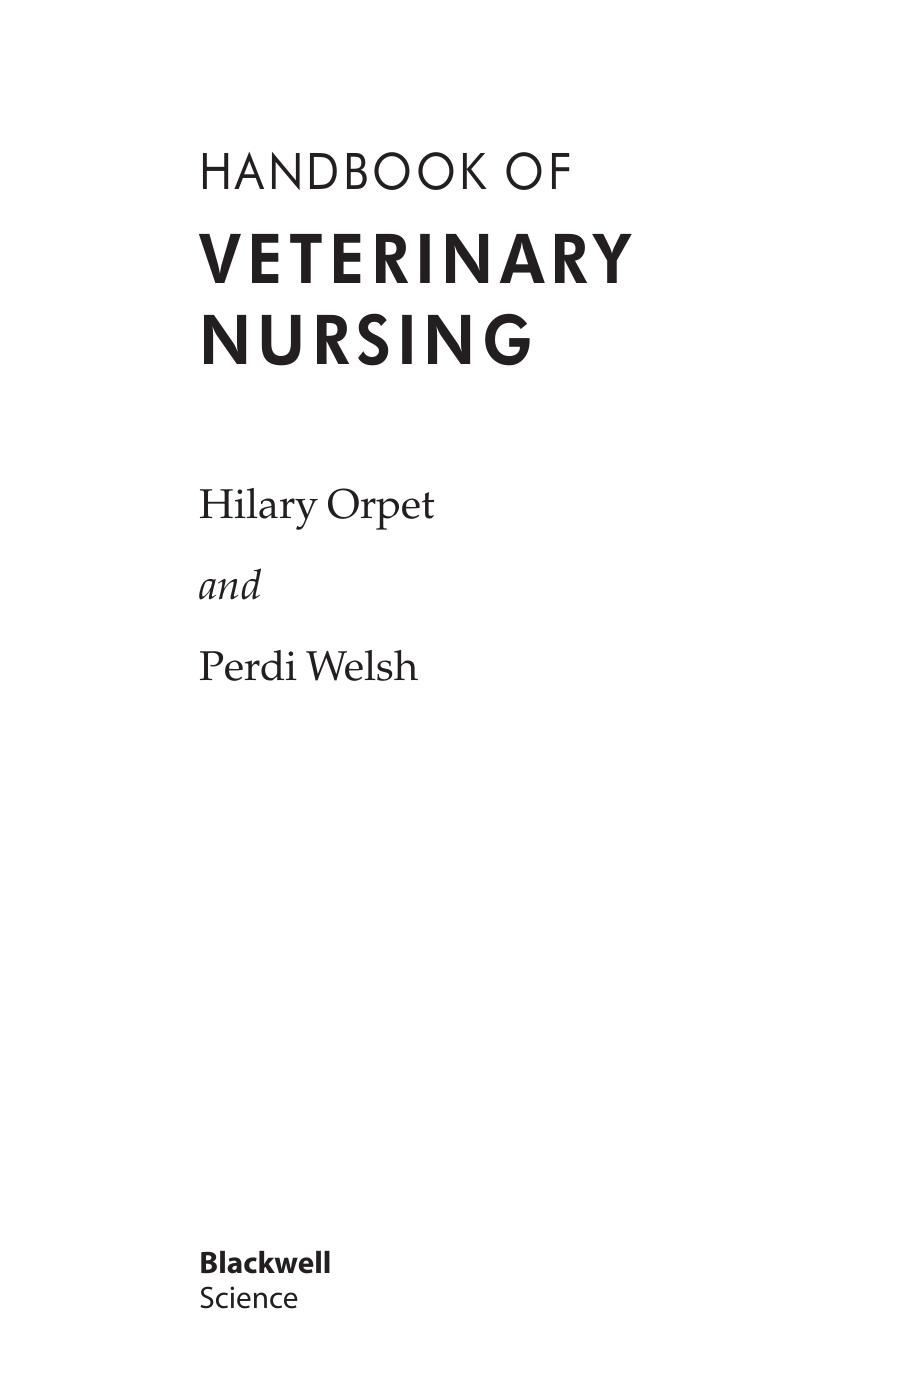 Handbook of Veterinary Nursing 2002